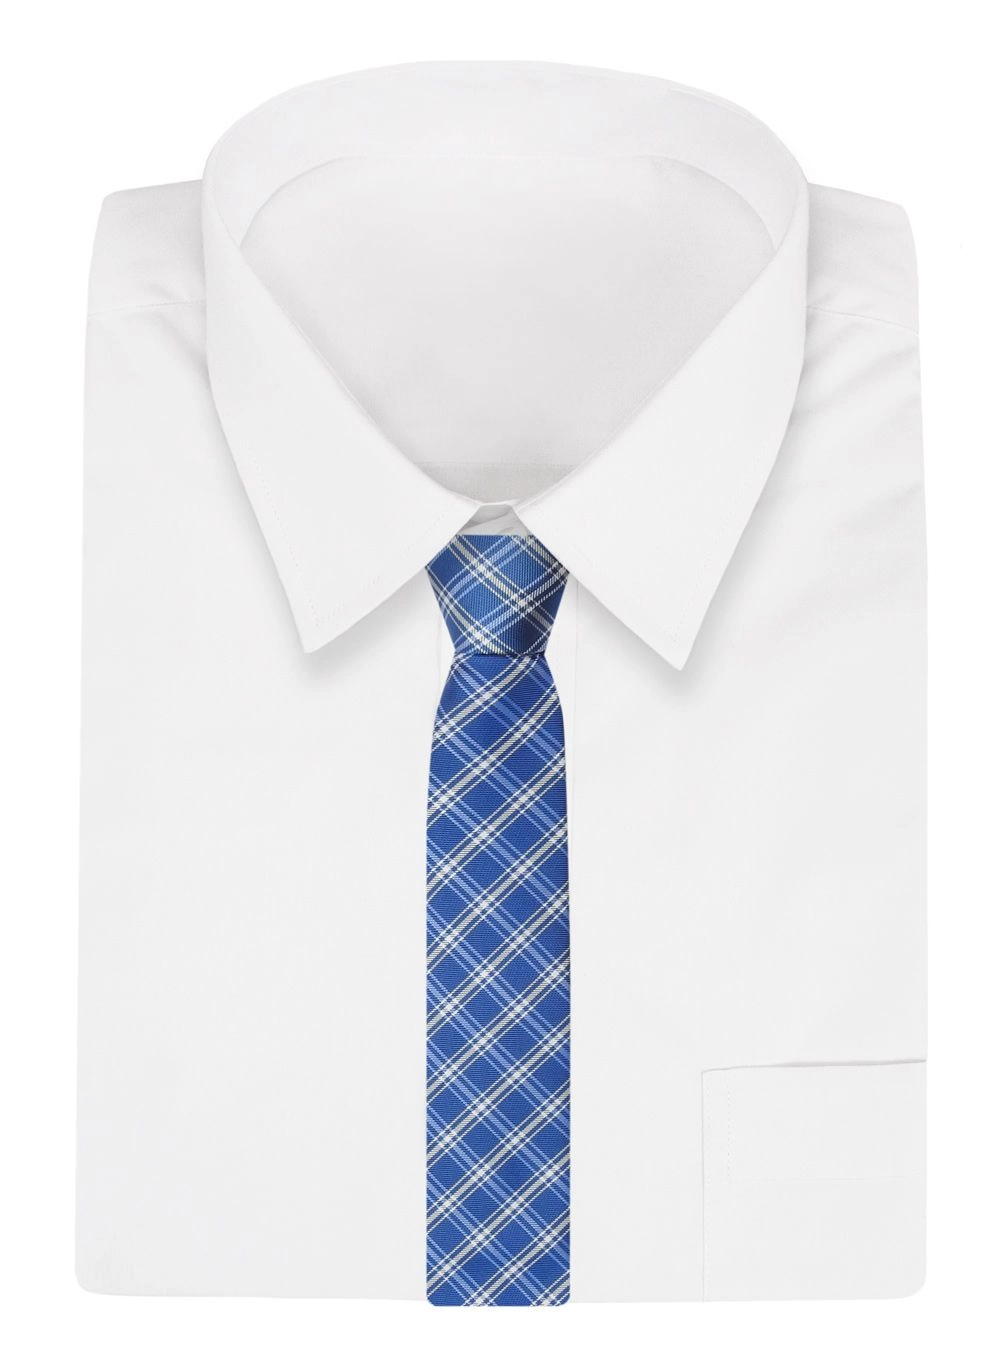 Krawat Niebieski w Kratkę, Elegancki, 7cm, Klasyczny, Męski -ALTIES